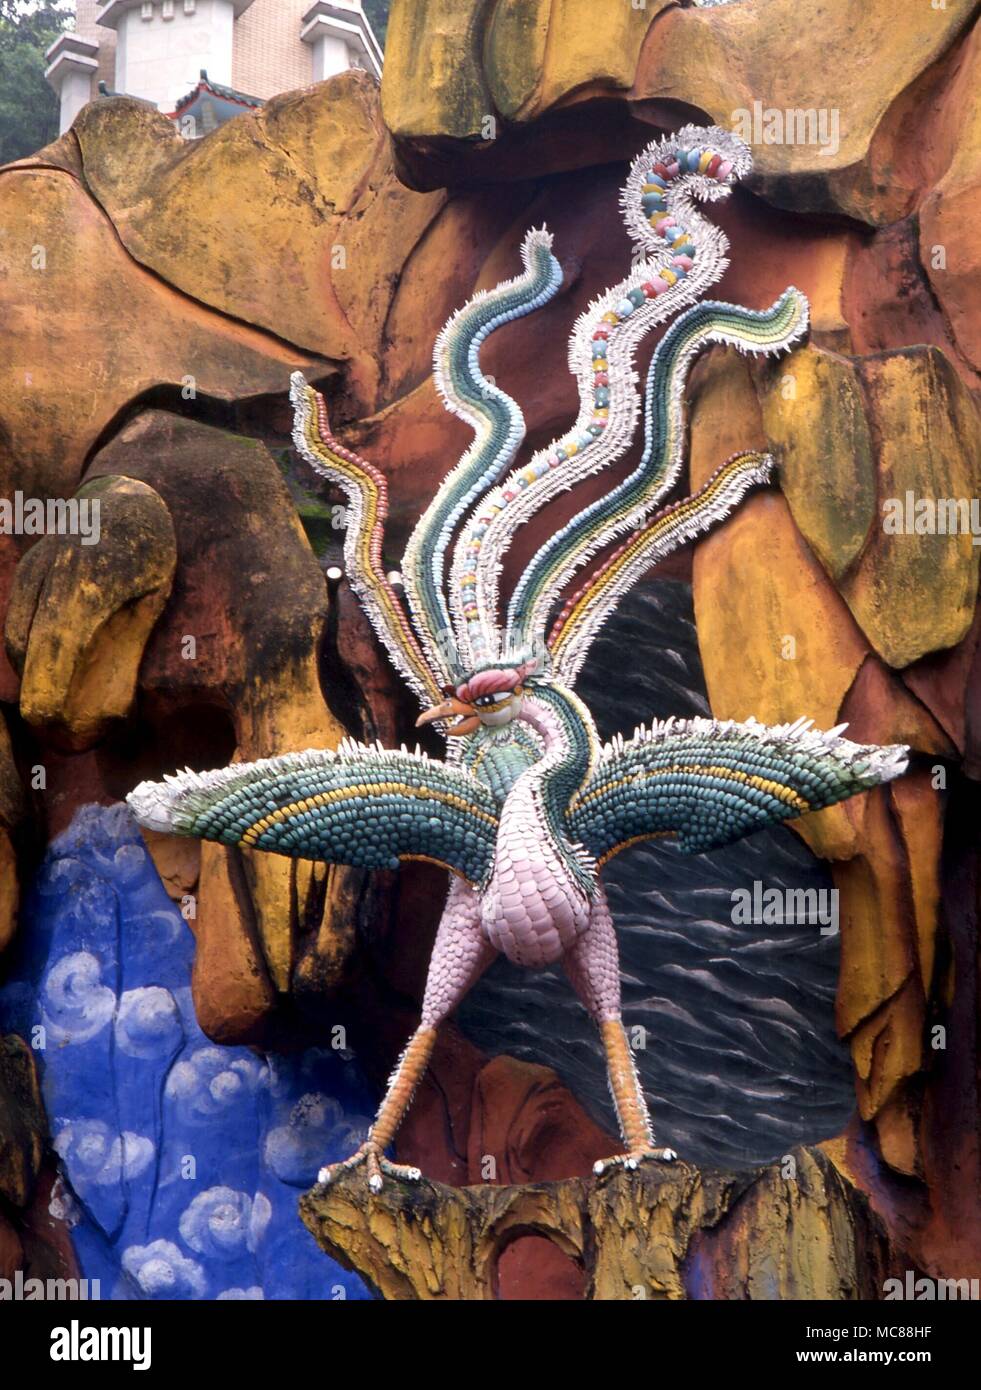 El ave fénix está en segundo lugar solamente al Dragón como un importante criatura mitológica de la mitología china. En la cerámica Haw Paw Gardens (Jardines de Tiger Balm) Hong Kong Foto de stock